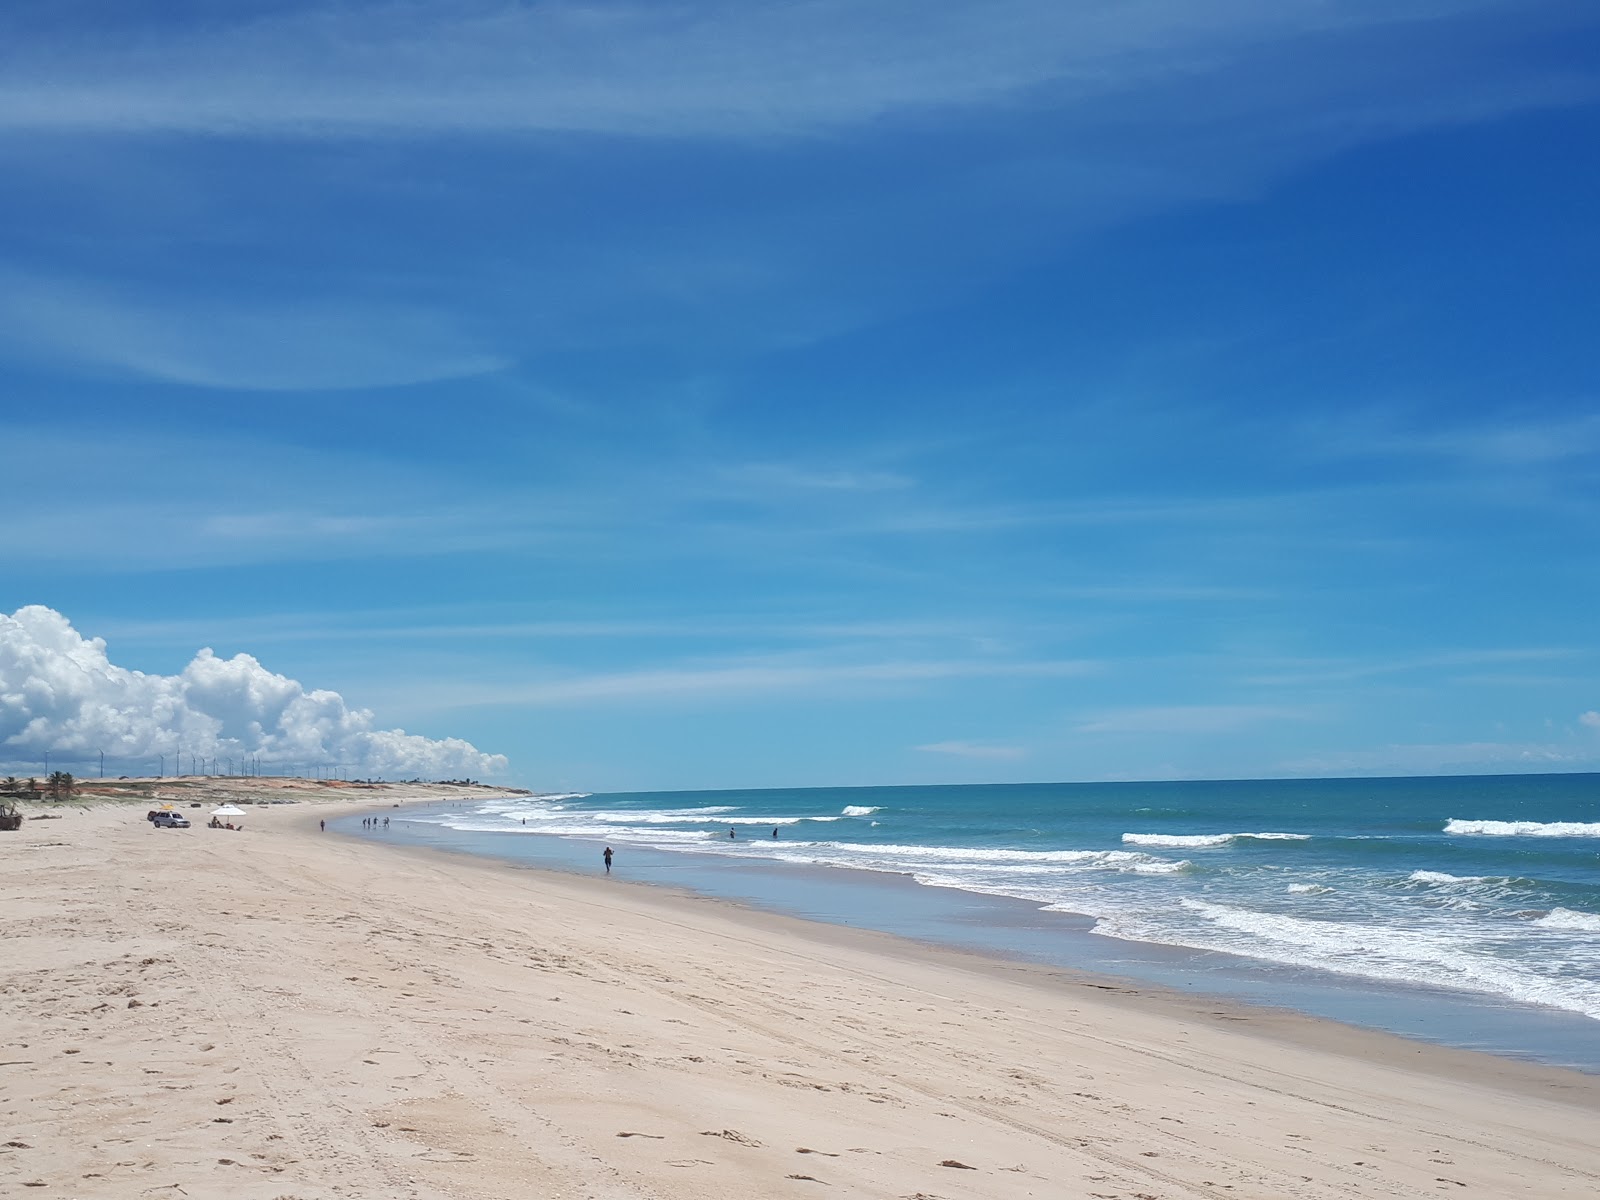 Praia do Uruau'in fotoğrafı geniş plaj ile birlikte